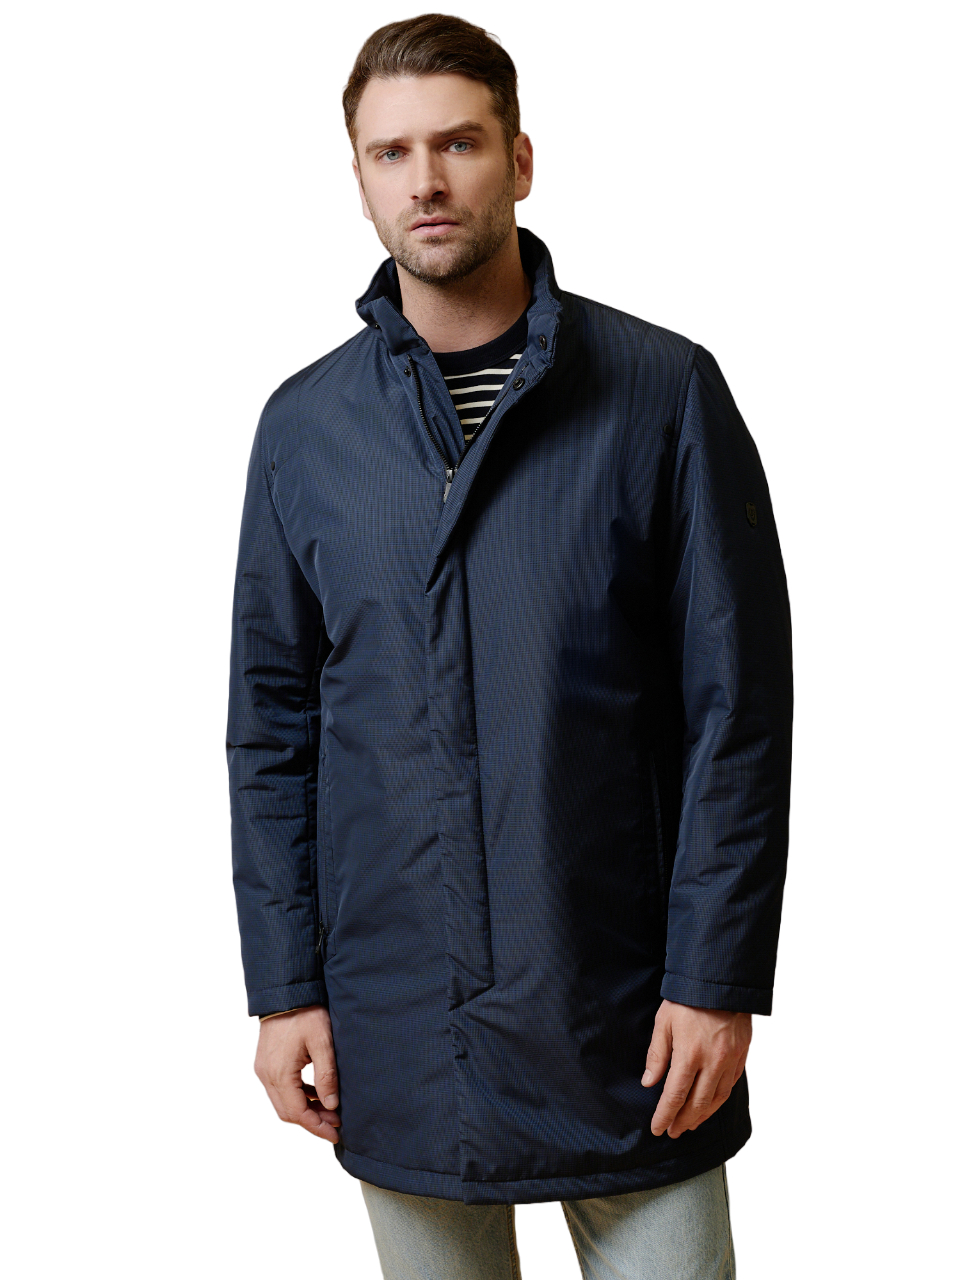 Куртка-плащ Bazioni для мужчин, утеплённый, 3015-2 M Grits Navy, р. 52-182, синий